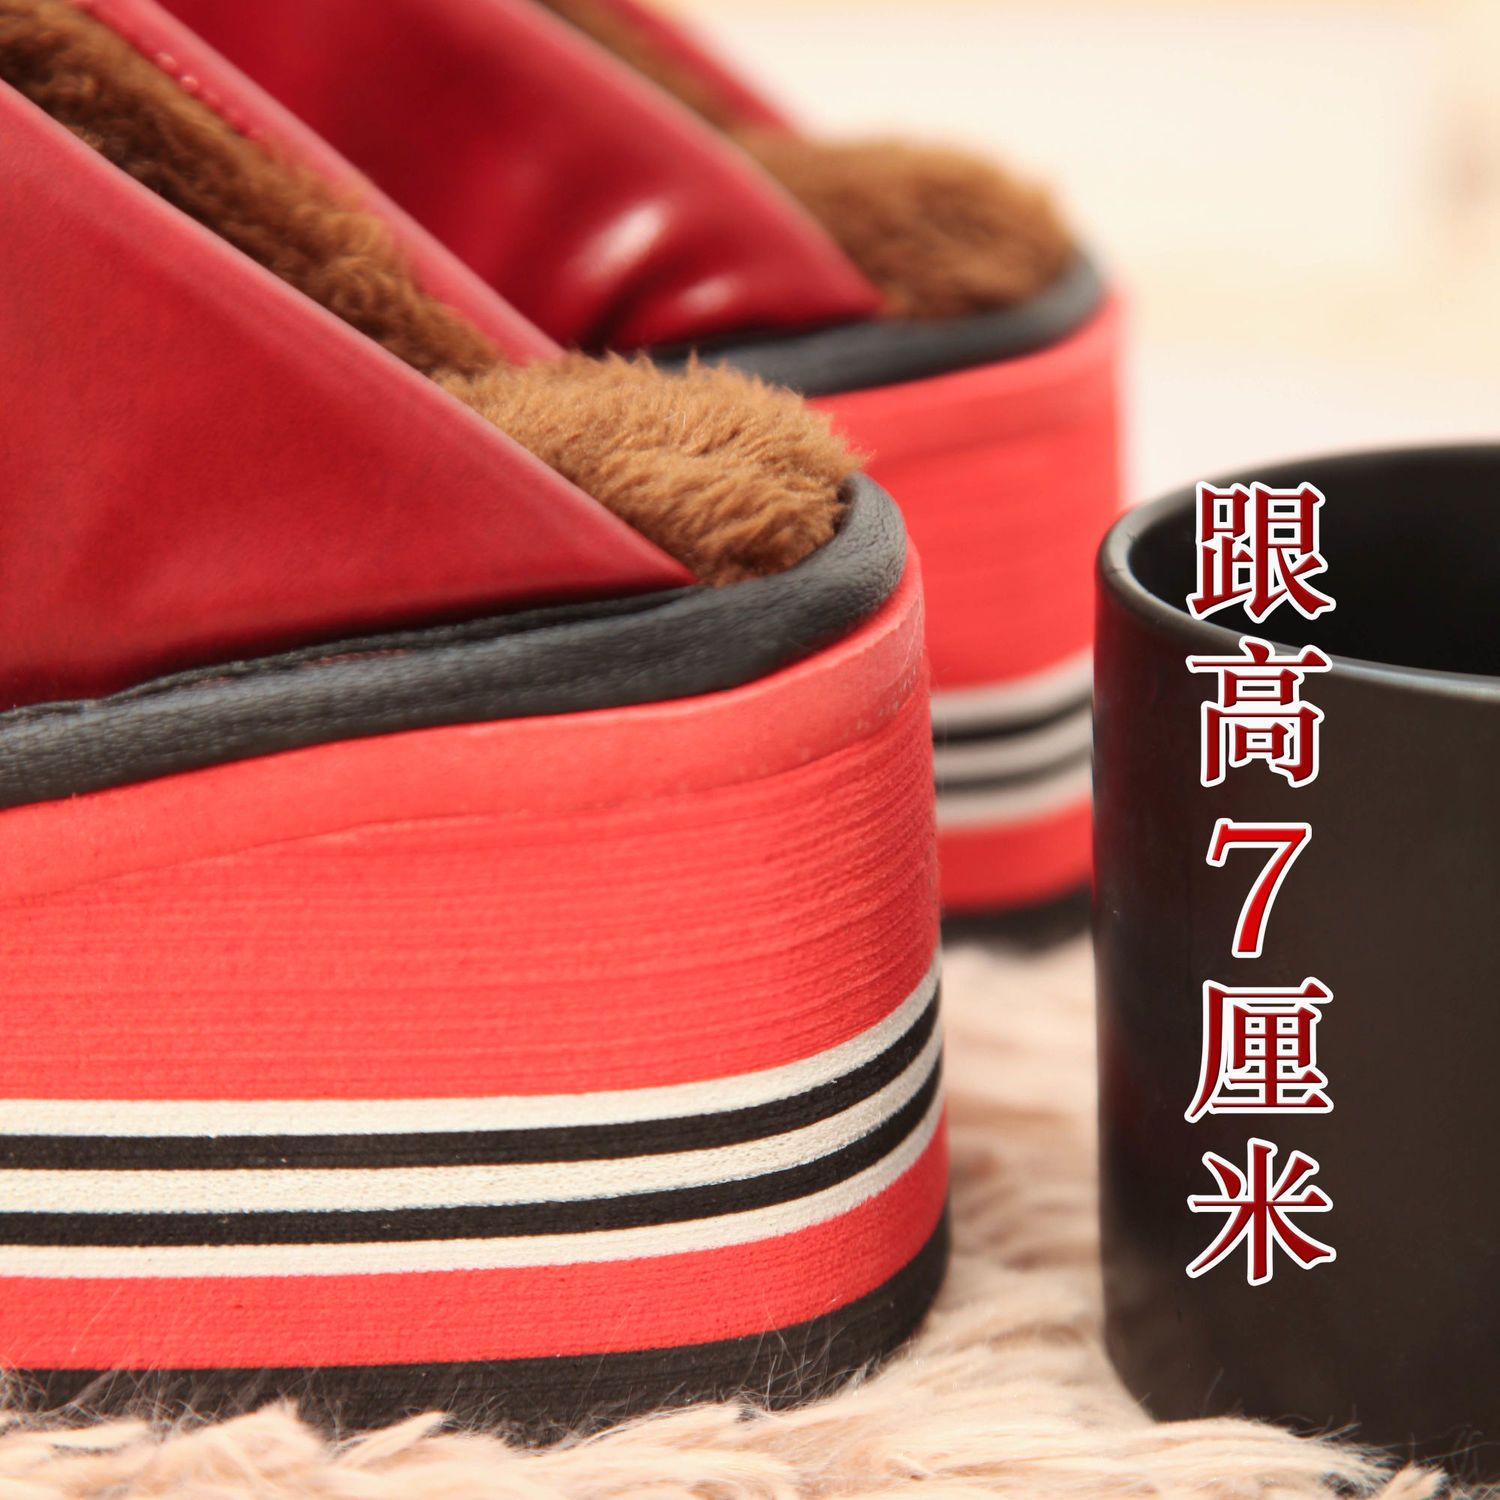 棉拖鞋女冬季居家鞋皮面保暖防滑增高加绒超厚底高跟手工防水拖鞋